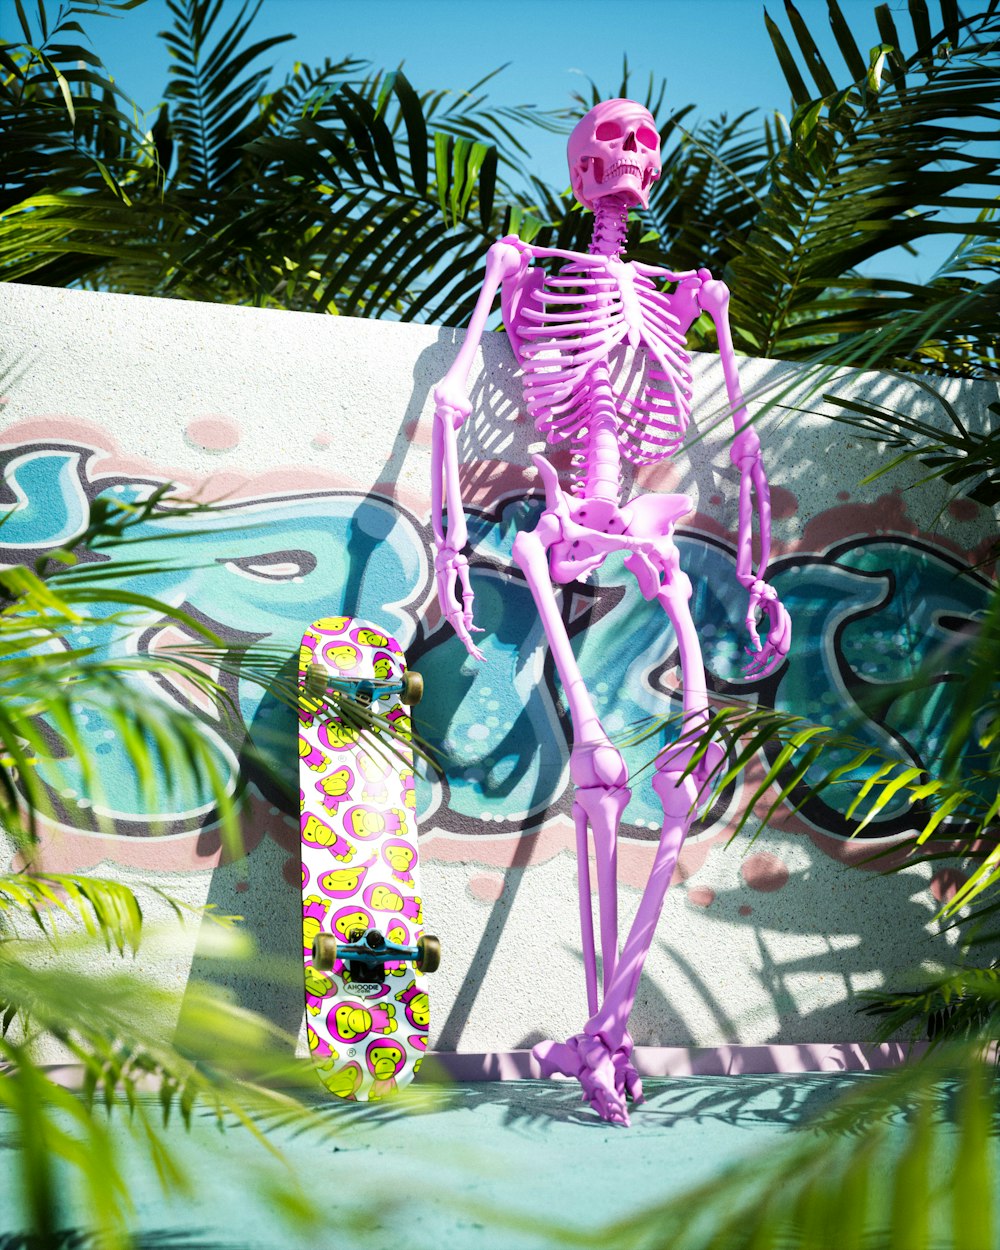 스케이트보드 위에 앉아 있는 분홍색 해골